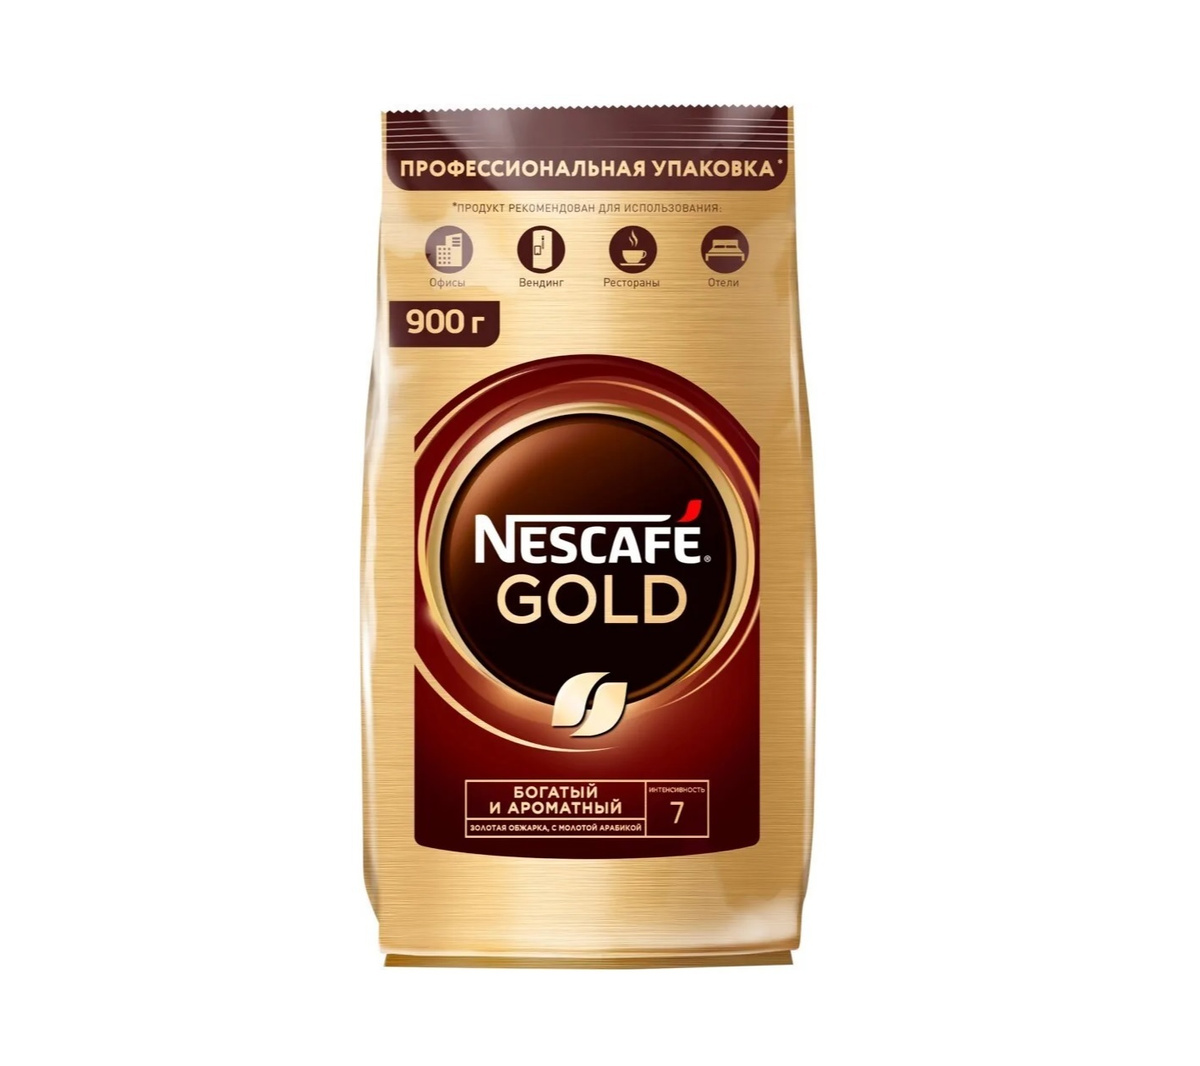 Nescafe gold сублимированный. Nescafe кофе Gold 900г.. Nescafe Gold, пакет, 900г. Кофе молотый Нескафе Голд. Кофе растворимый Нескафе Голд 320г м/у.